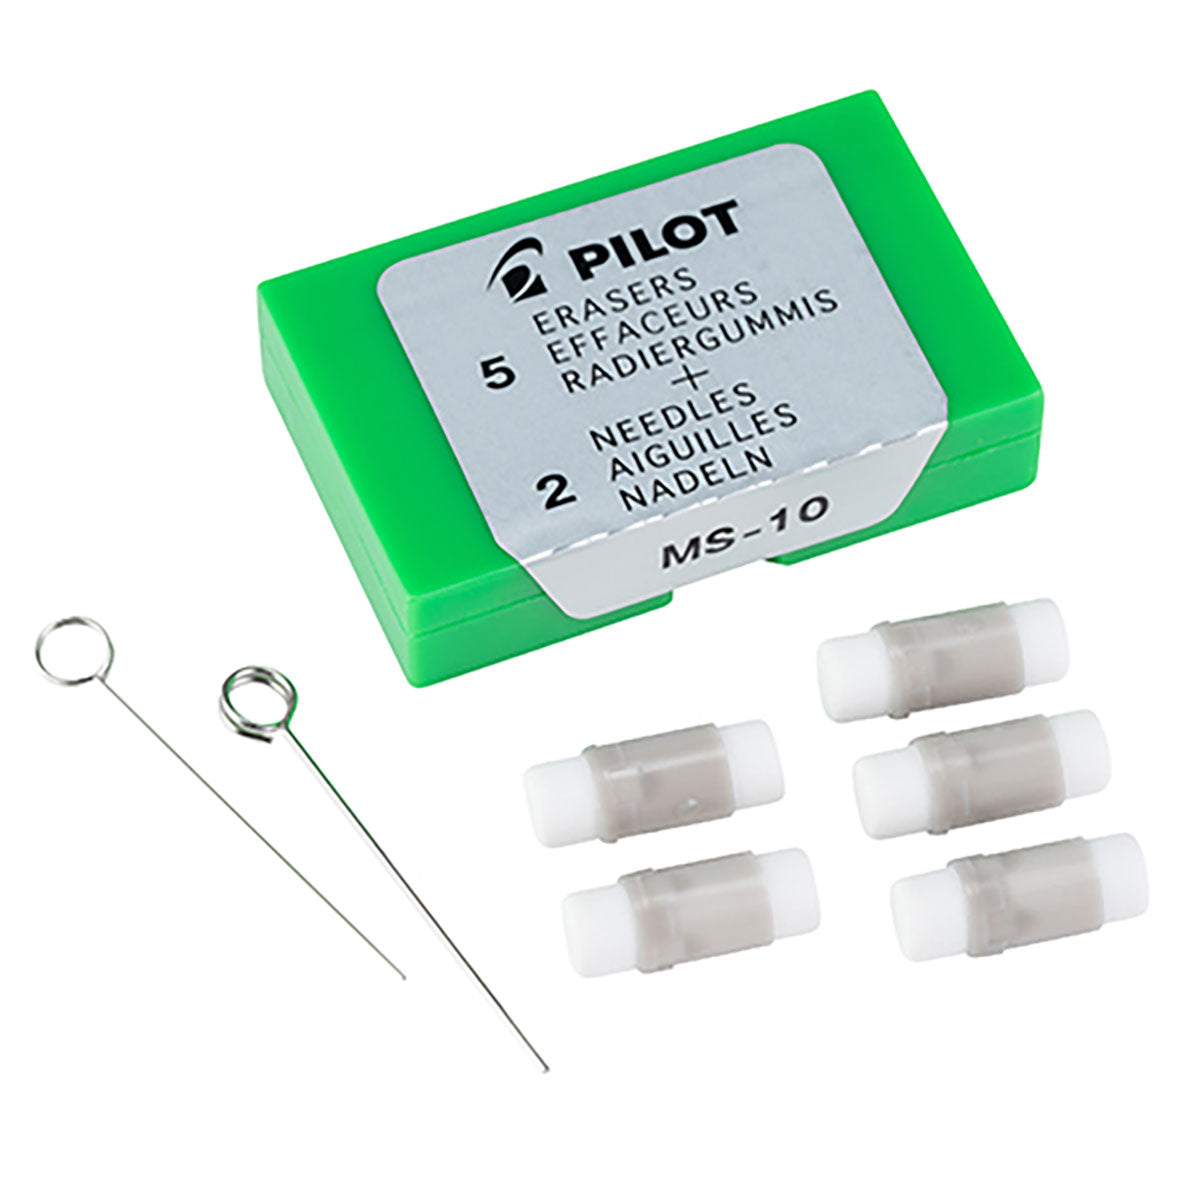 Pilot G2 Eraser Refills Pack of 5 + 2 Pencil Cleaning Needles  Pilot Eraser Refills